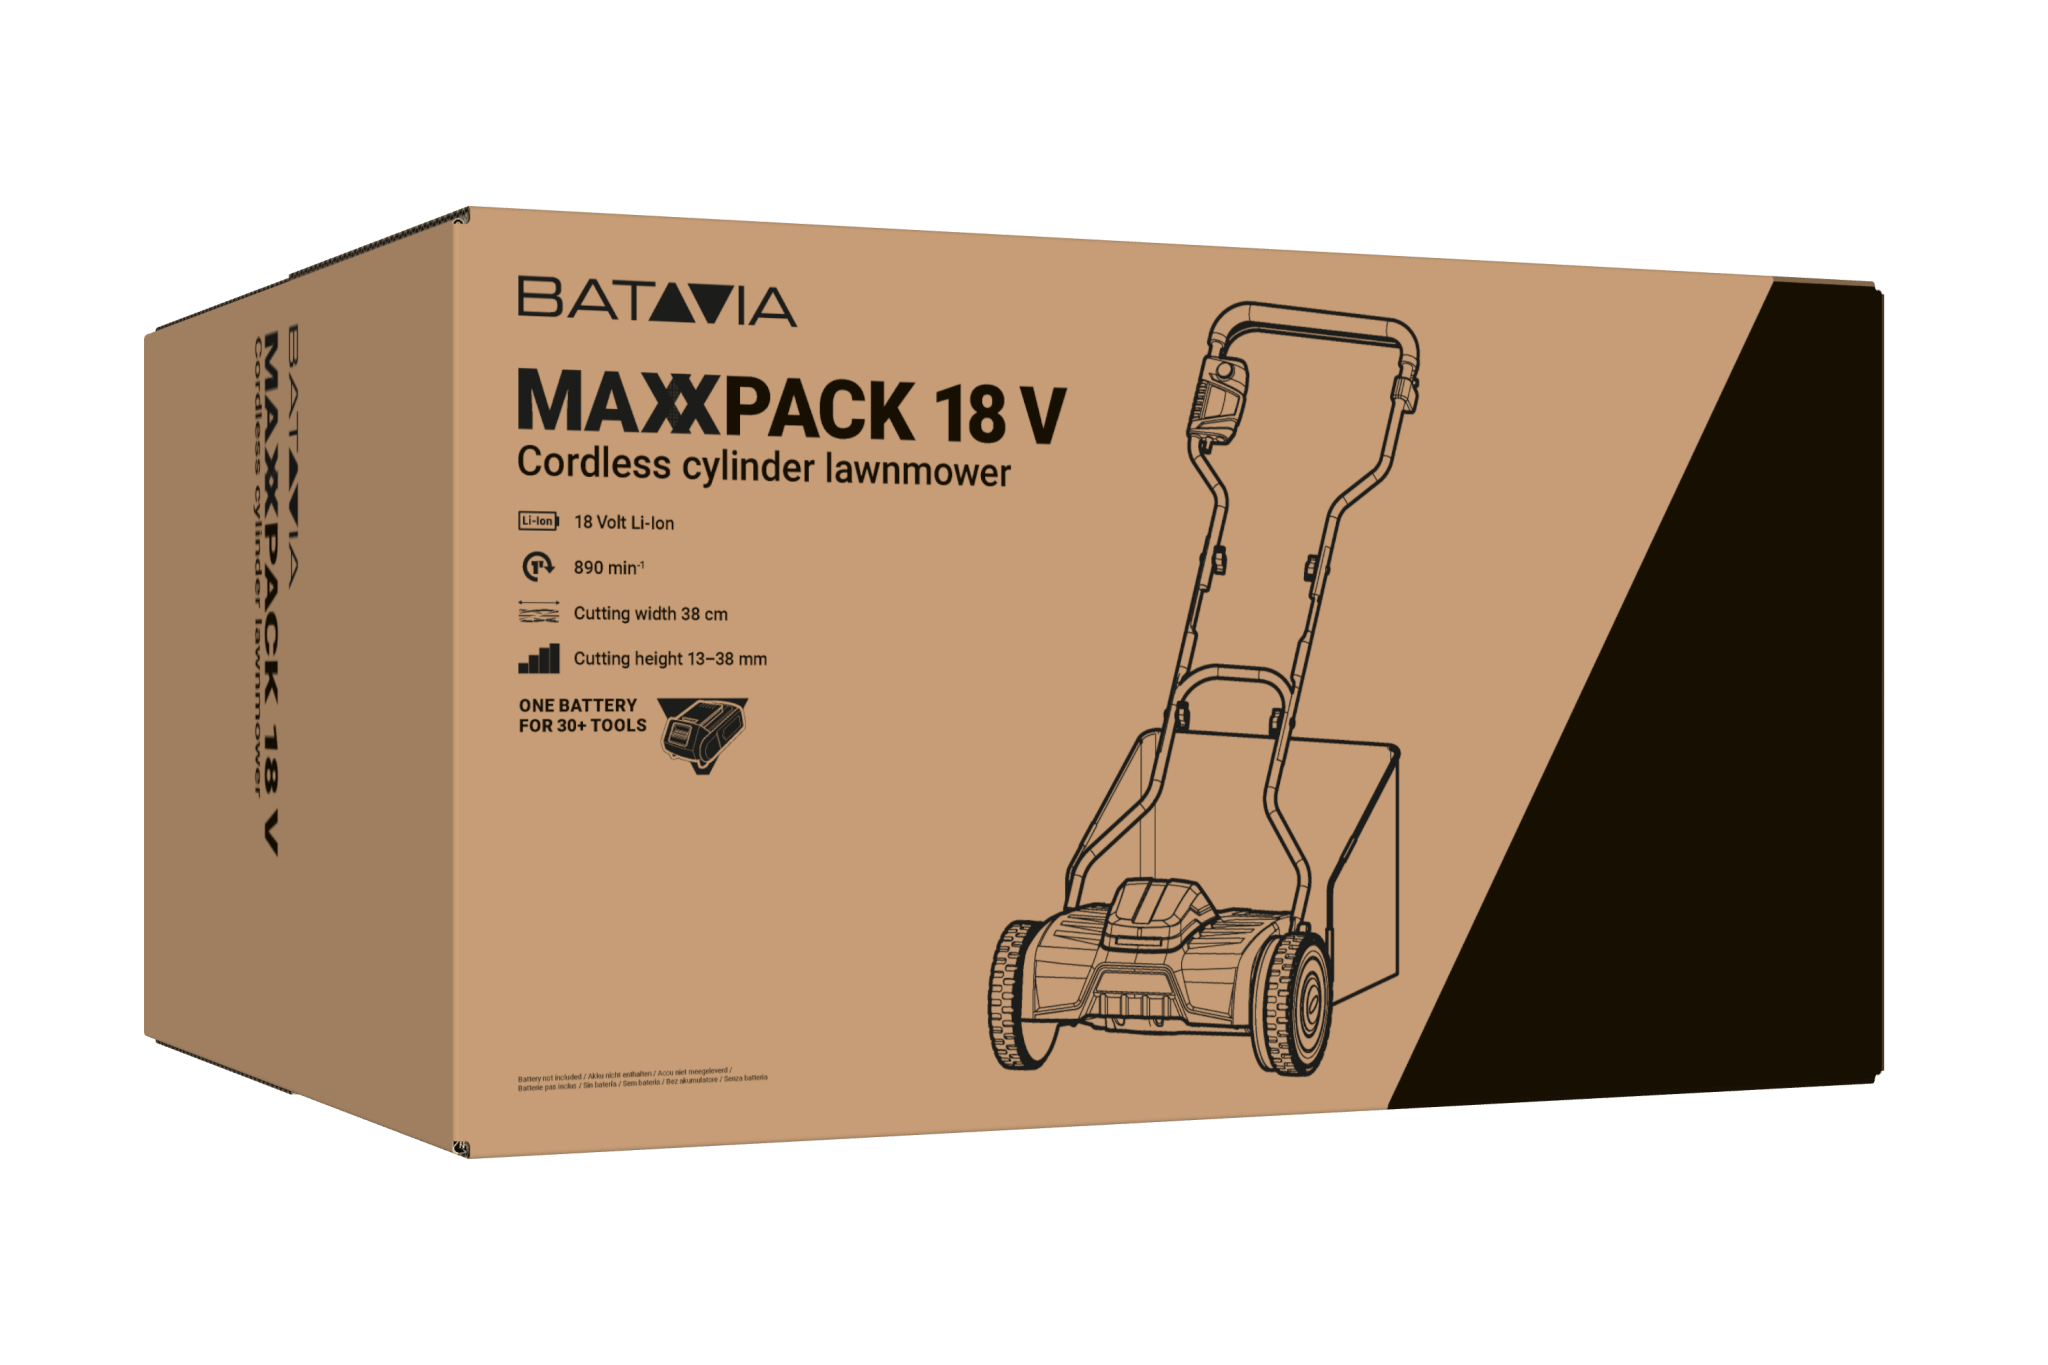 Verpakking Handgrasmaaier | Maxxpack collectie | Batavia